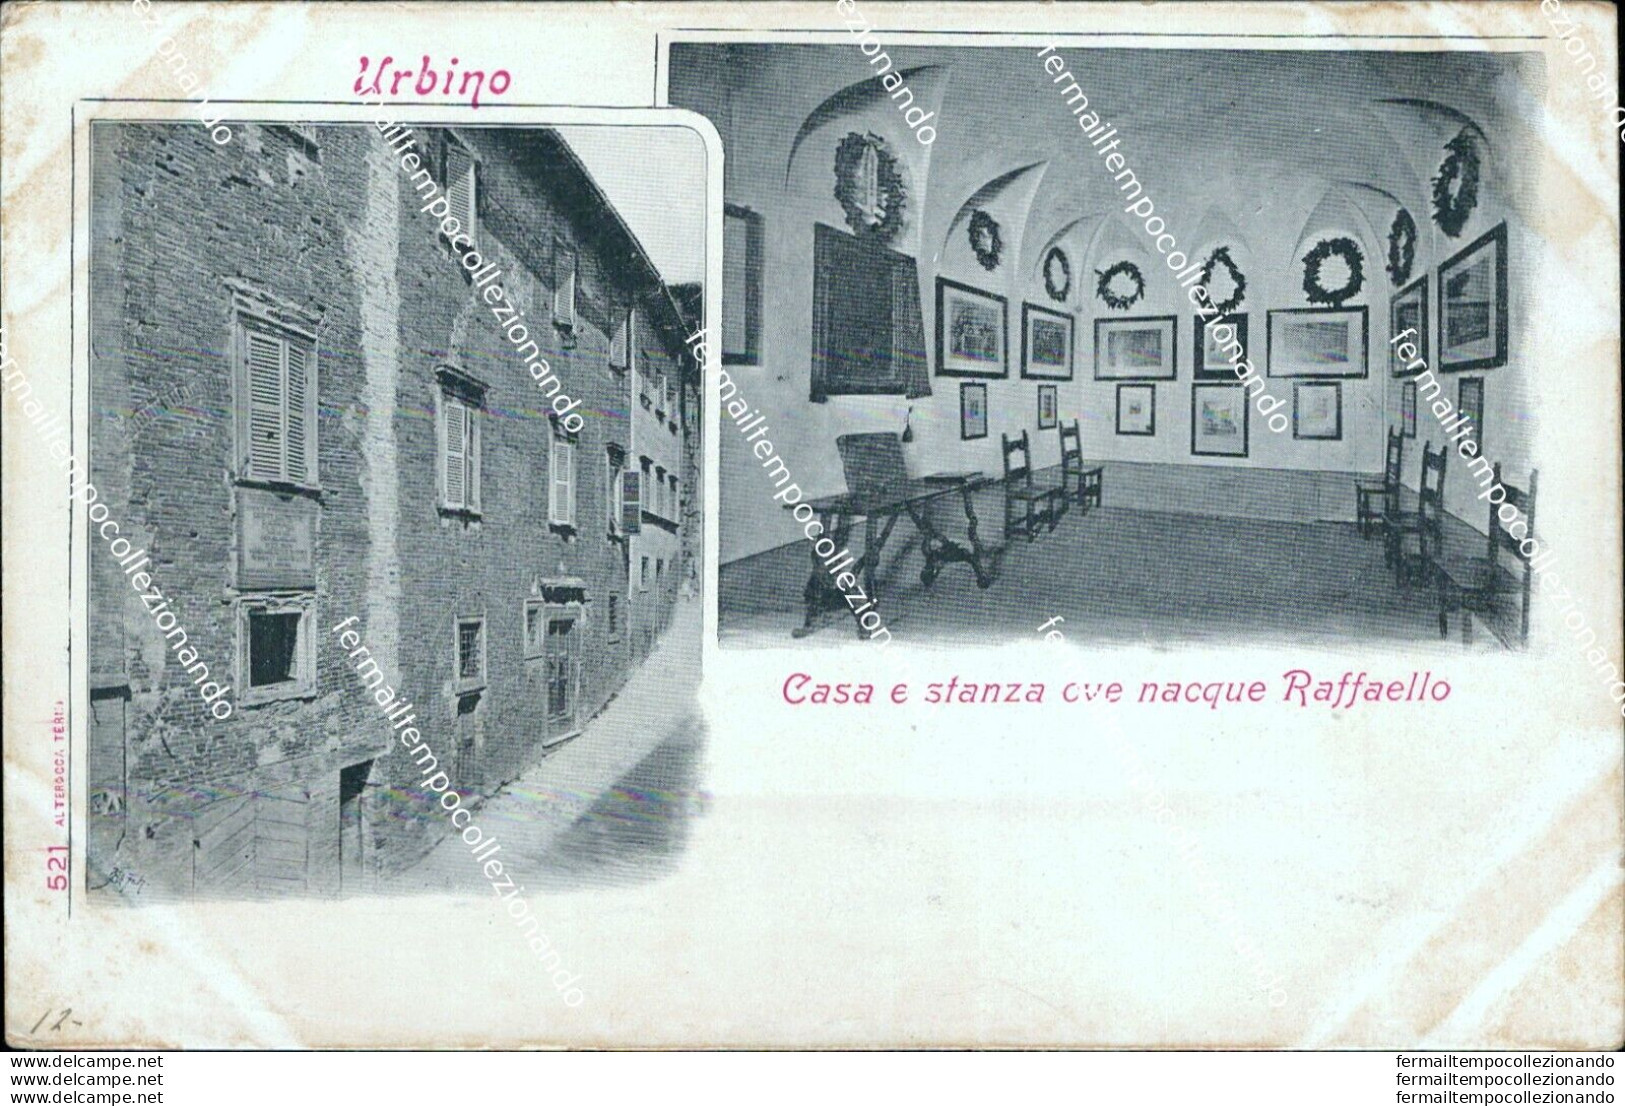 As591 Cartolina Urbino Casa E Stanza Ove Nacque Raffaello - Urbino